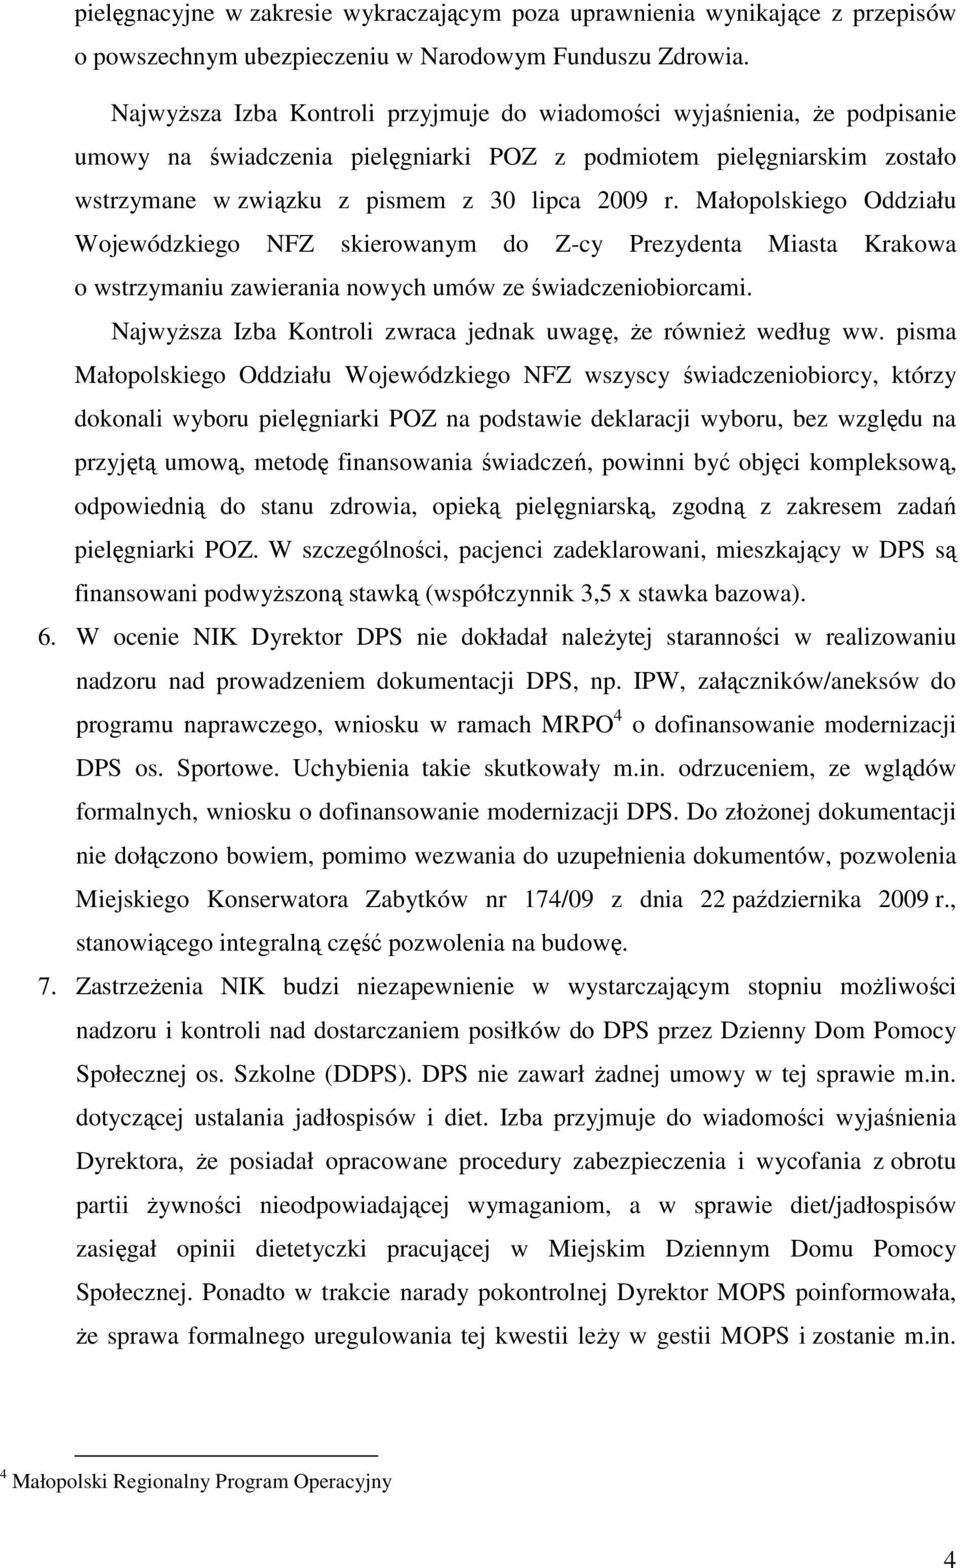 Małopolskiego Oddziału Wojewódzkiego NFZ skierowanym do Z-cy Prezydenta Miasta Krakowa o wstrzymaniu zawierania nowych umów ze świadczeniobiorcami.